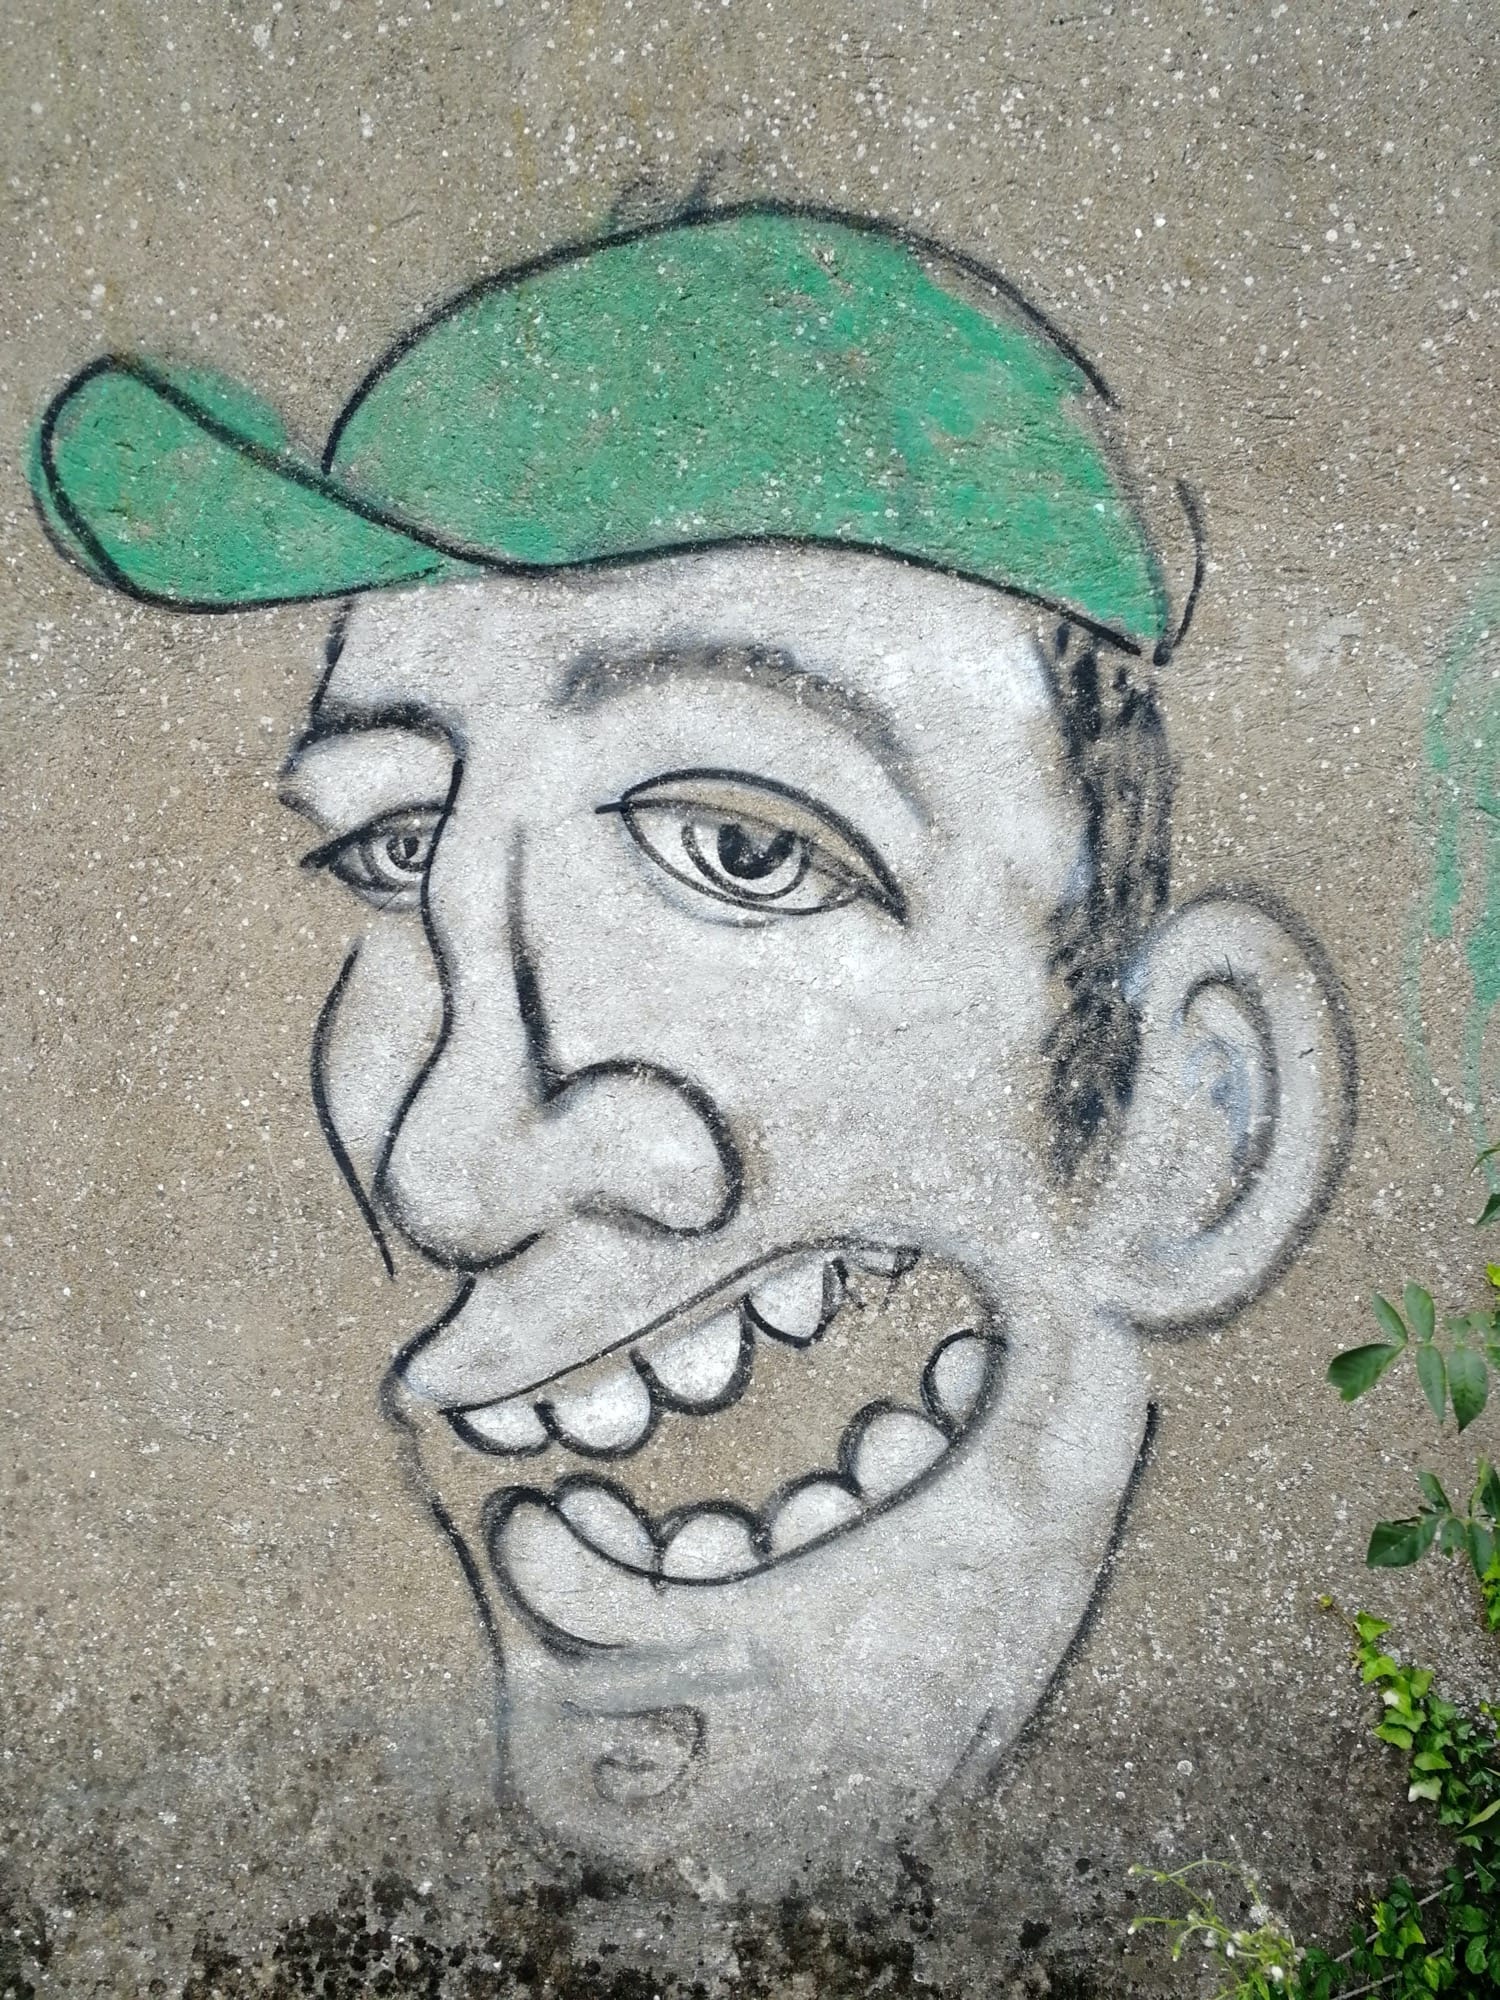 Graffiti 197  captured by Rabot in Rezé France